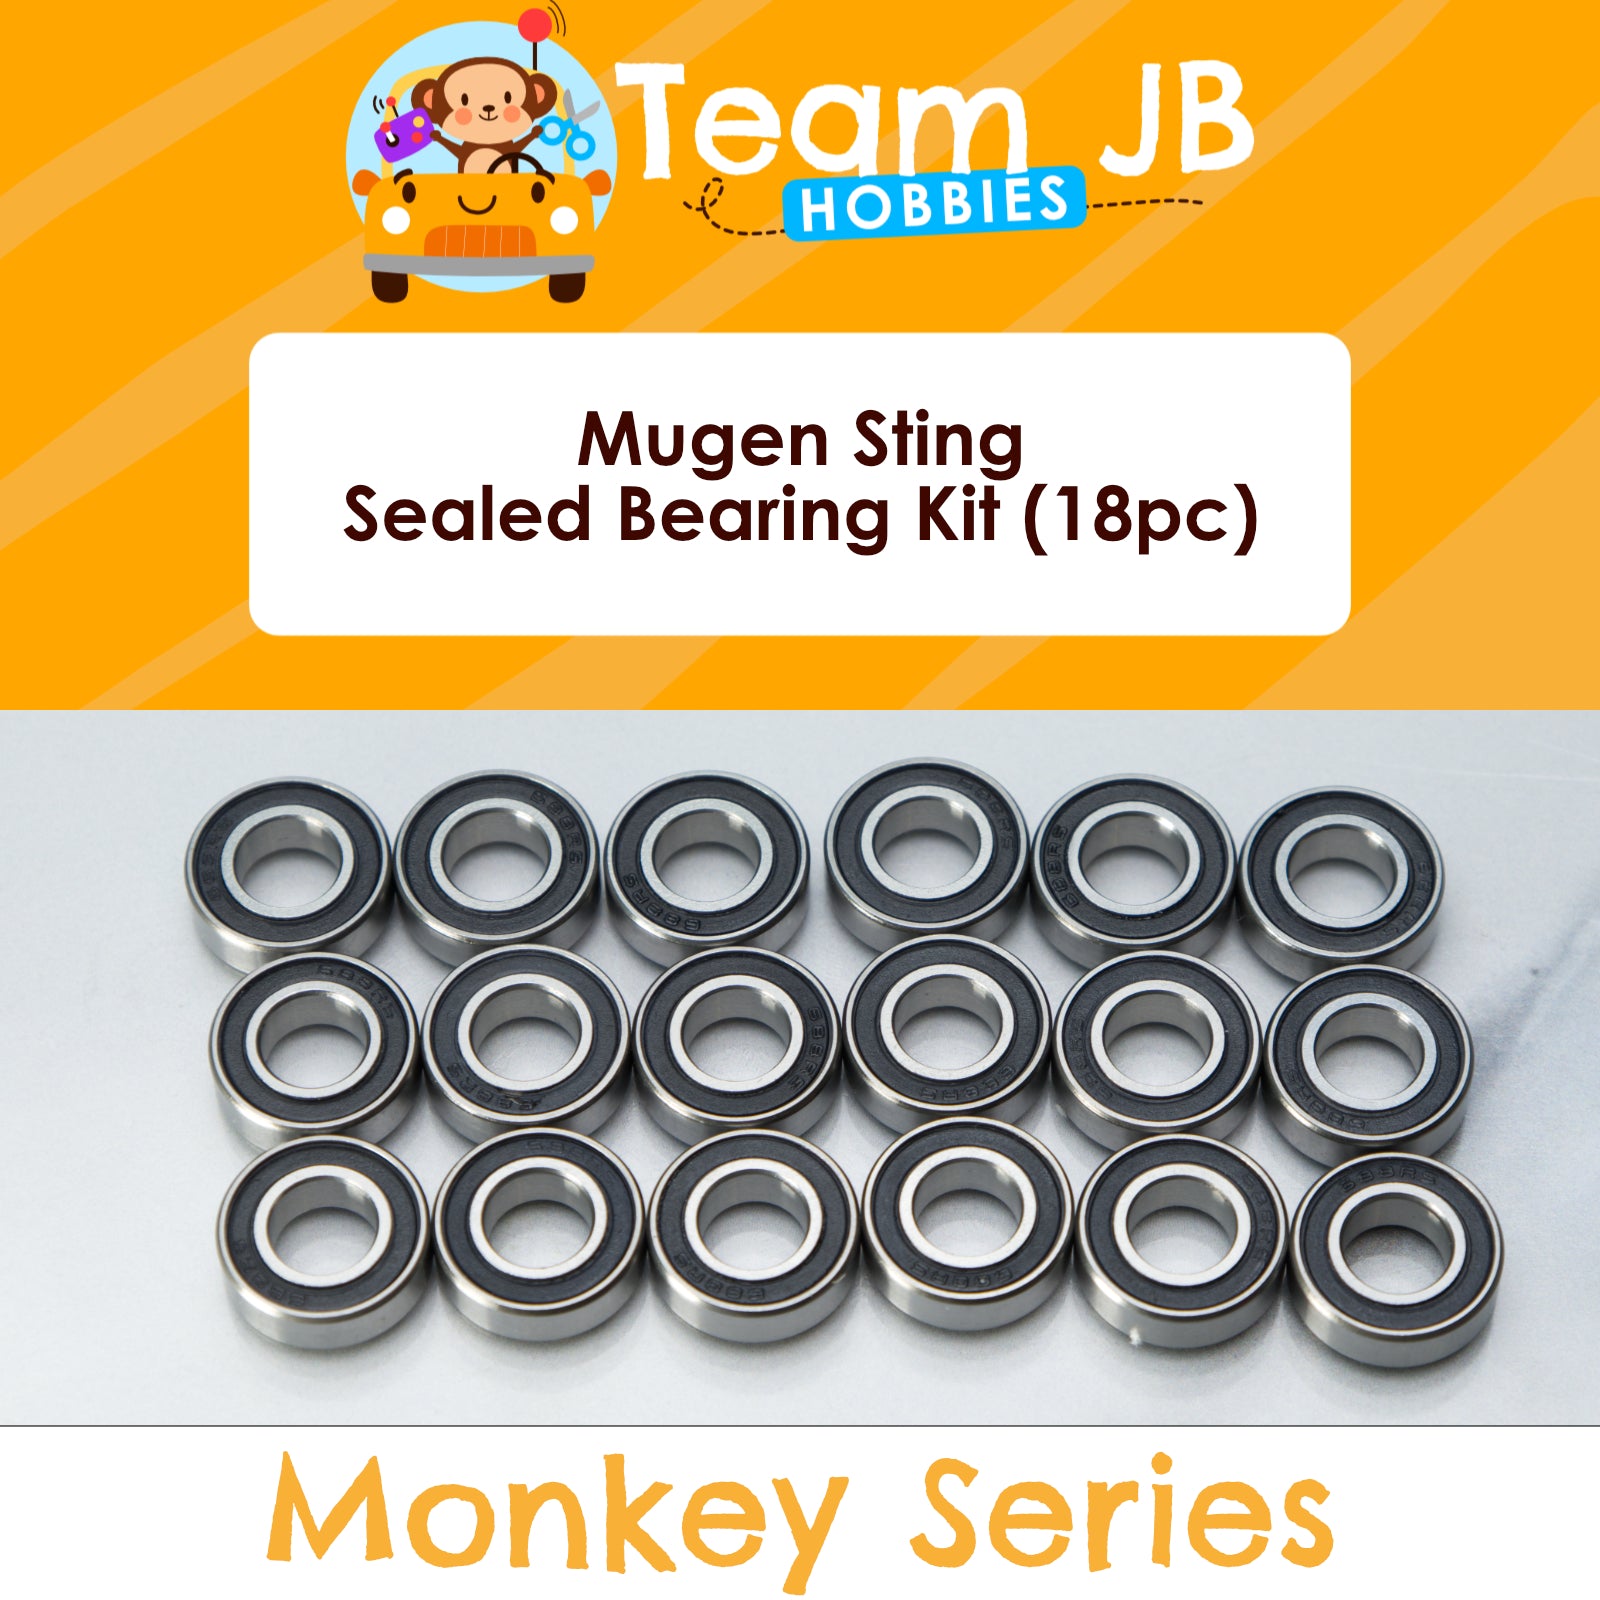 Mugen Sting - Sealed Bearing Kit